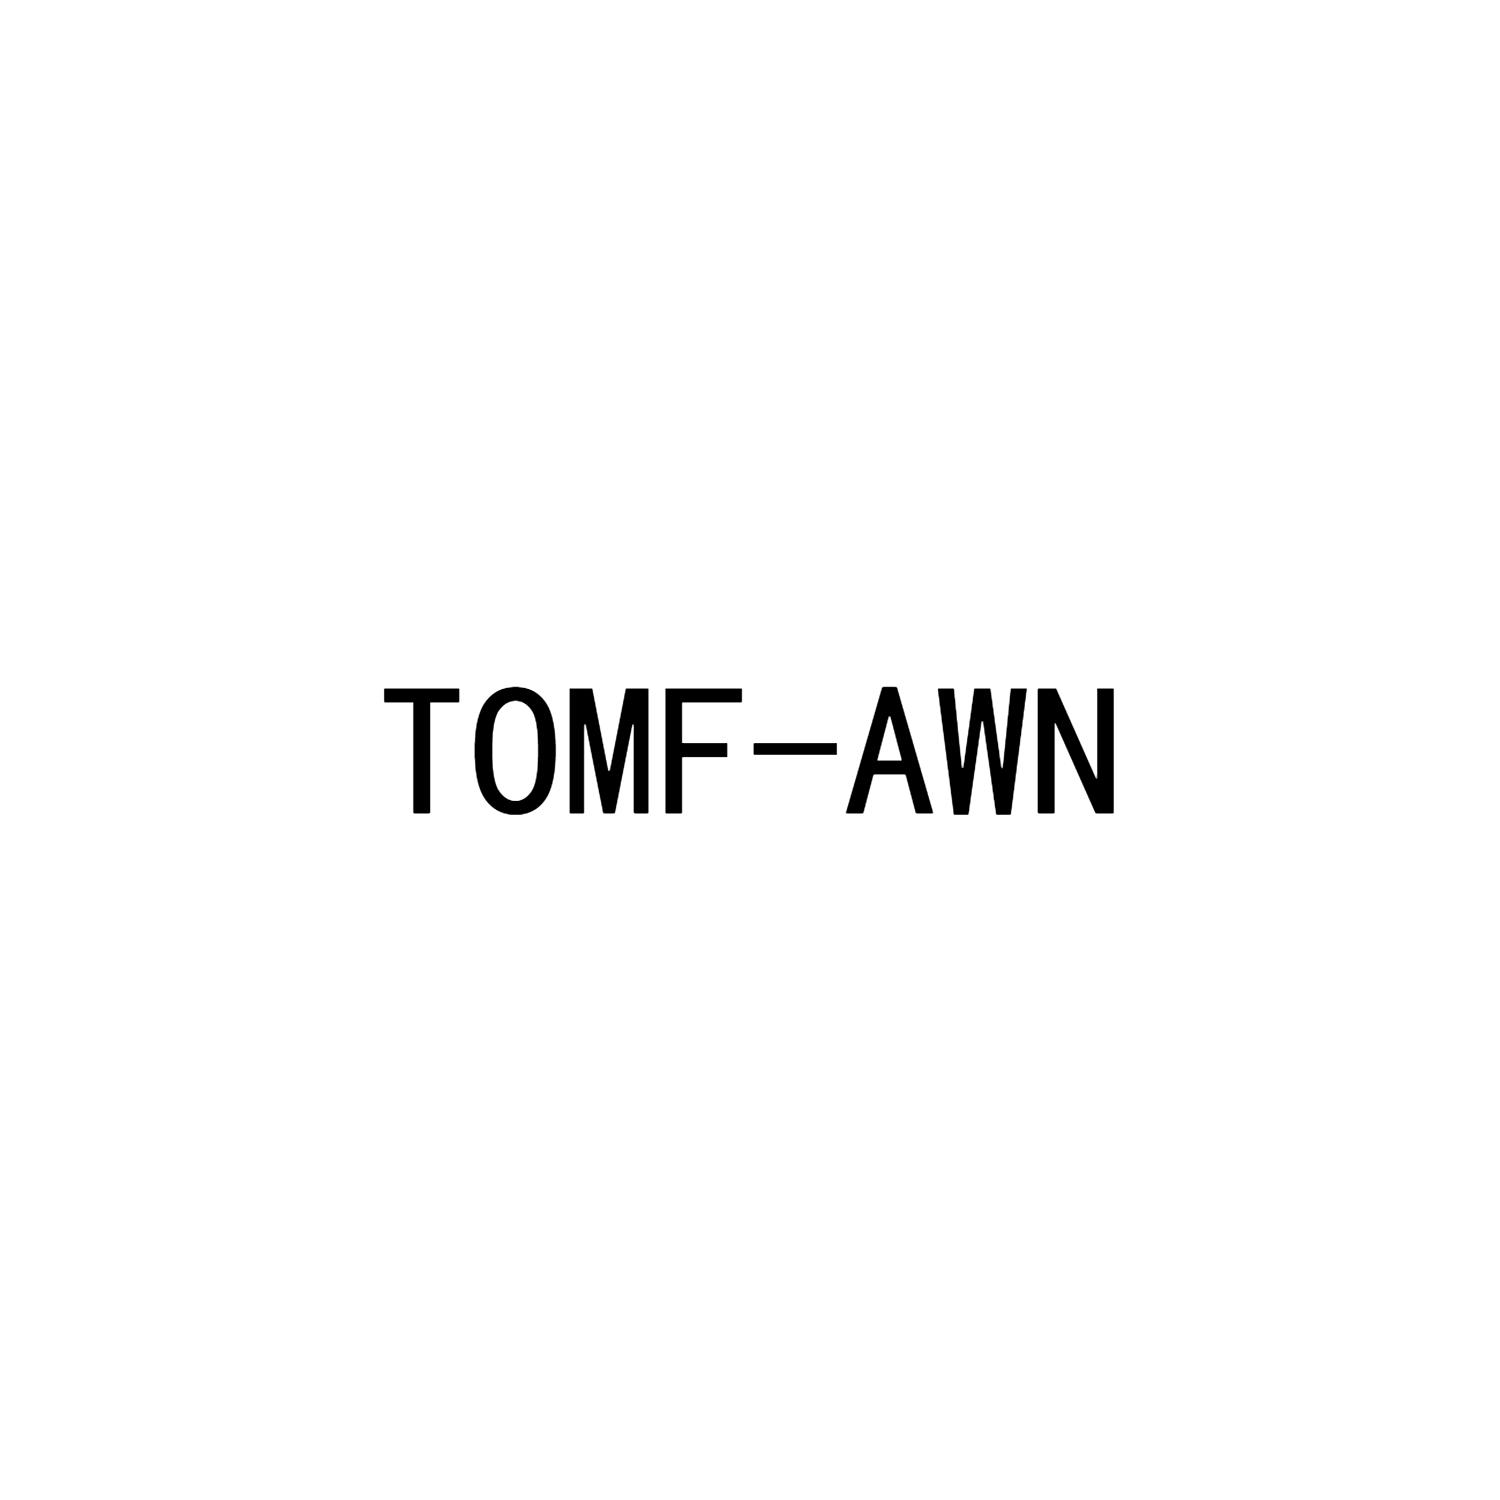 TOMF-AWN